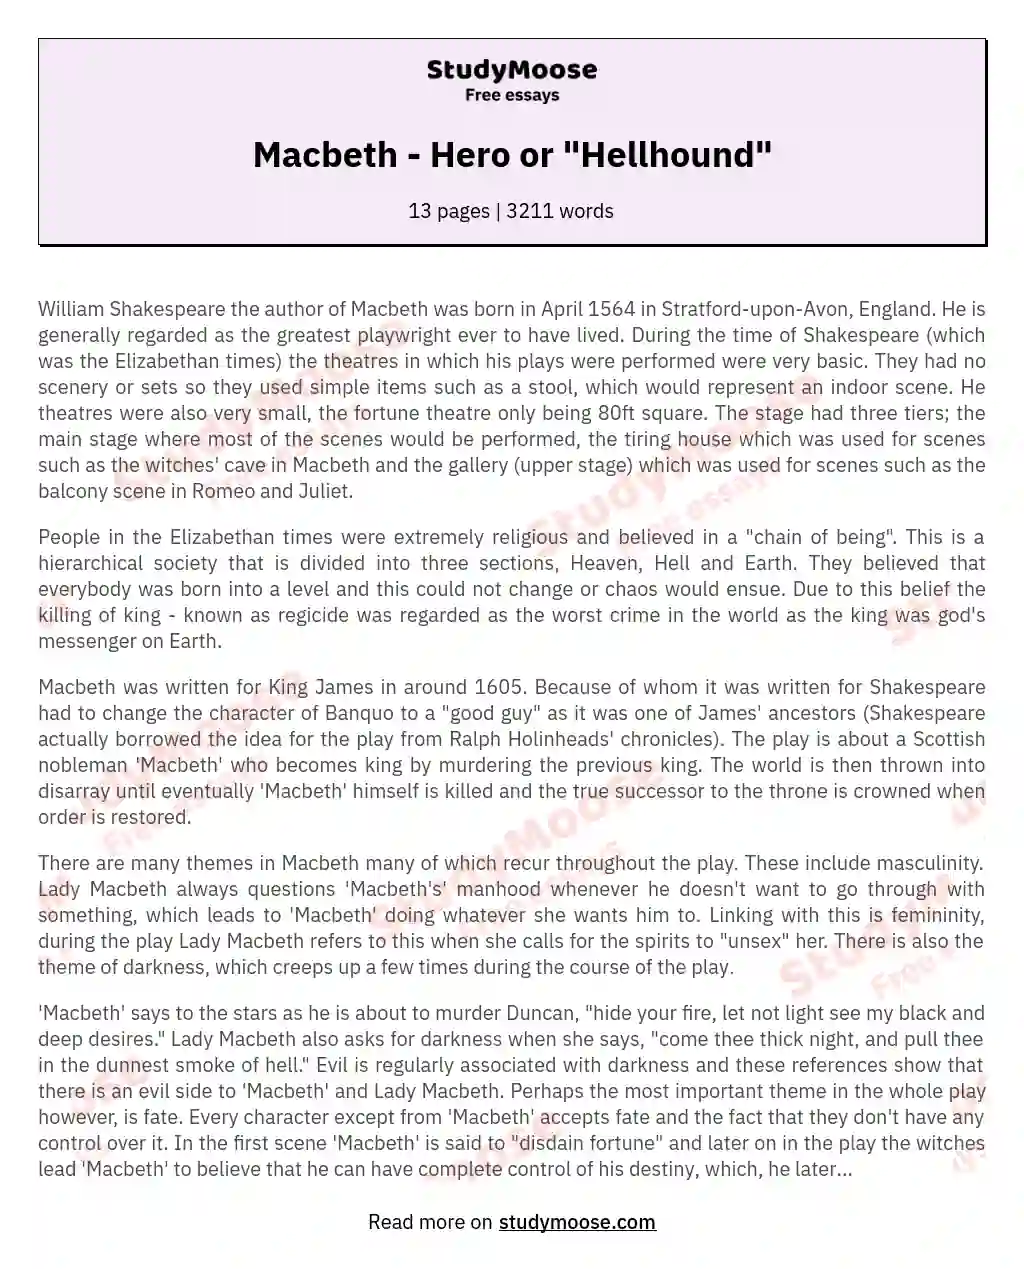 Macbeth - Hero or "Hellhound" essay